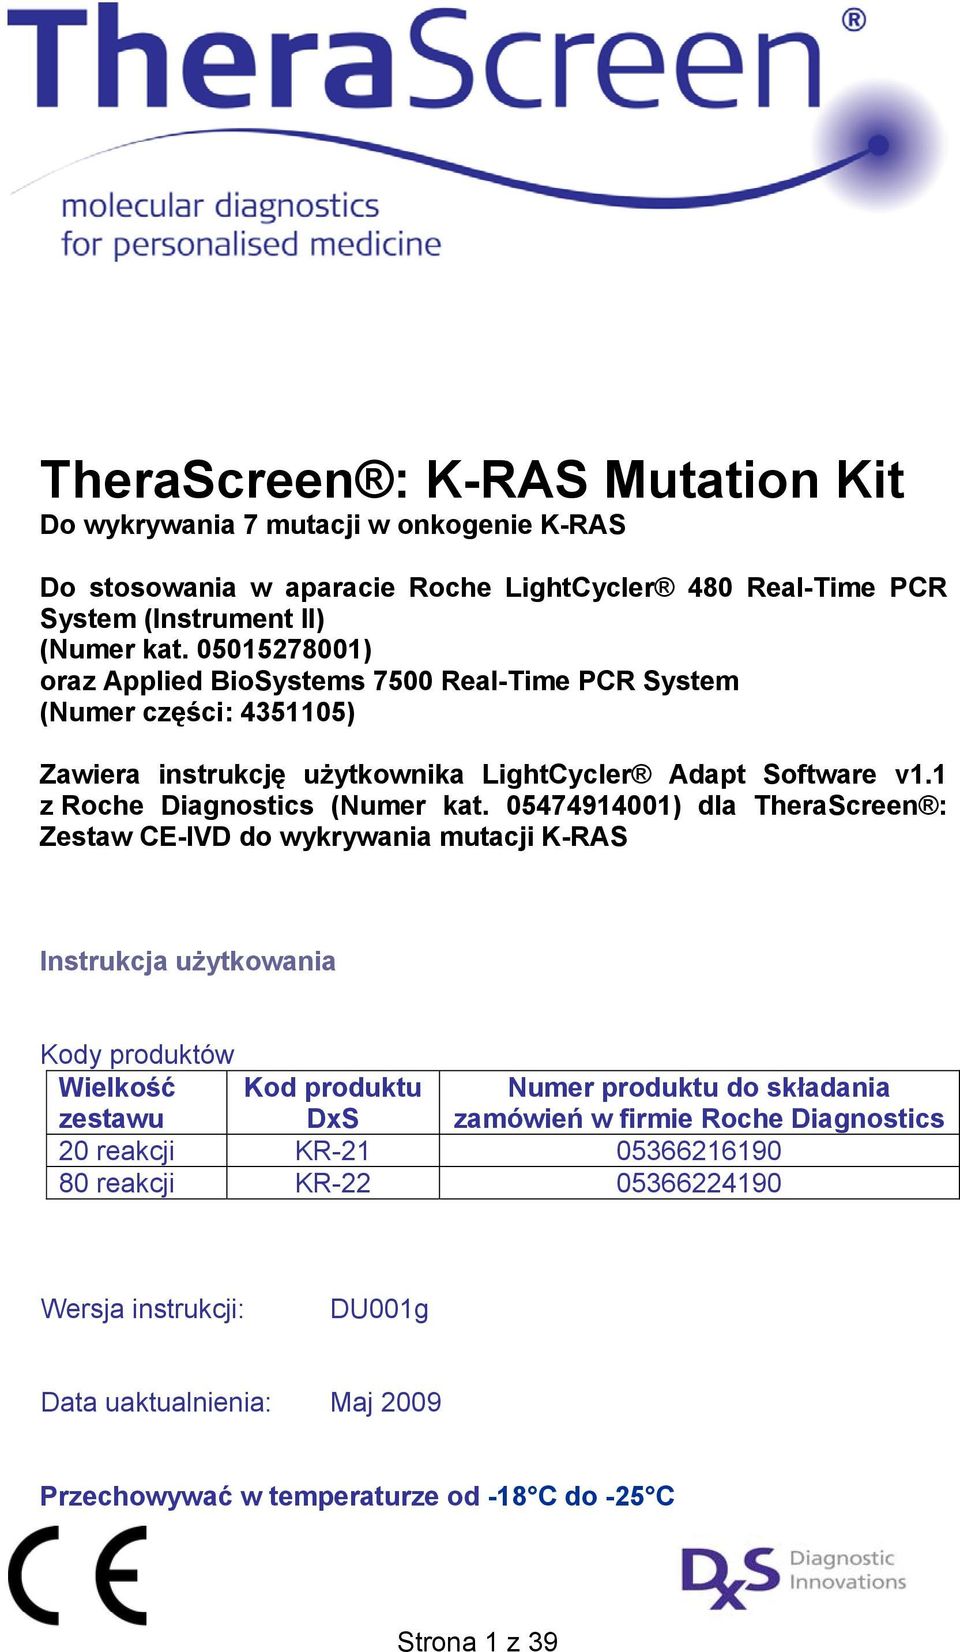 05474914001) dla TheraScreen : Zestaw CE-IVD do wykrywania mutacji K-RAS Instrukcja użytkowania Kody produktów Wielkość zestawu Kod produktu DxS 20 reakcji KR-21 05366216190 80